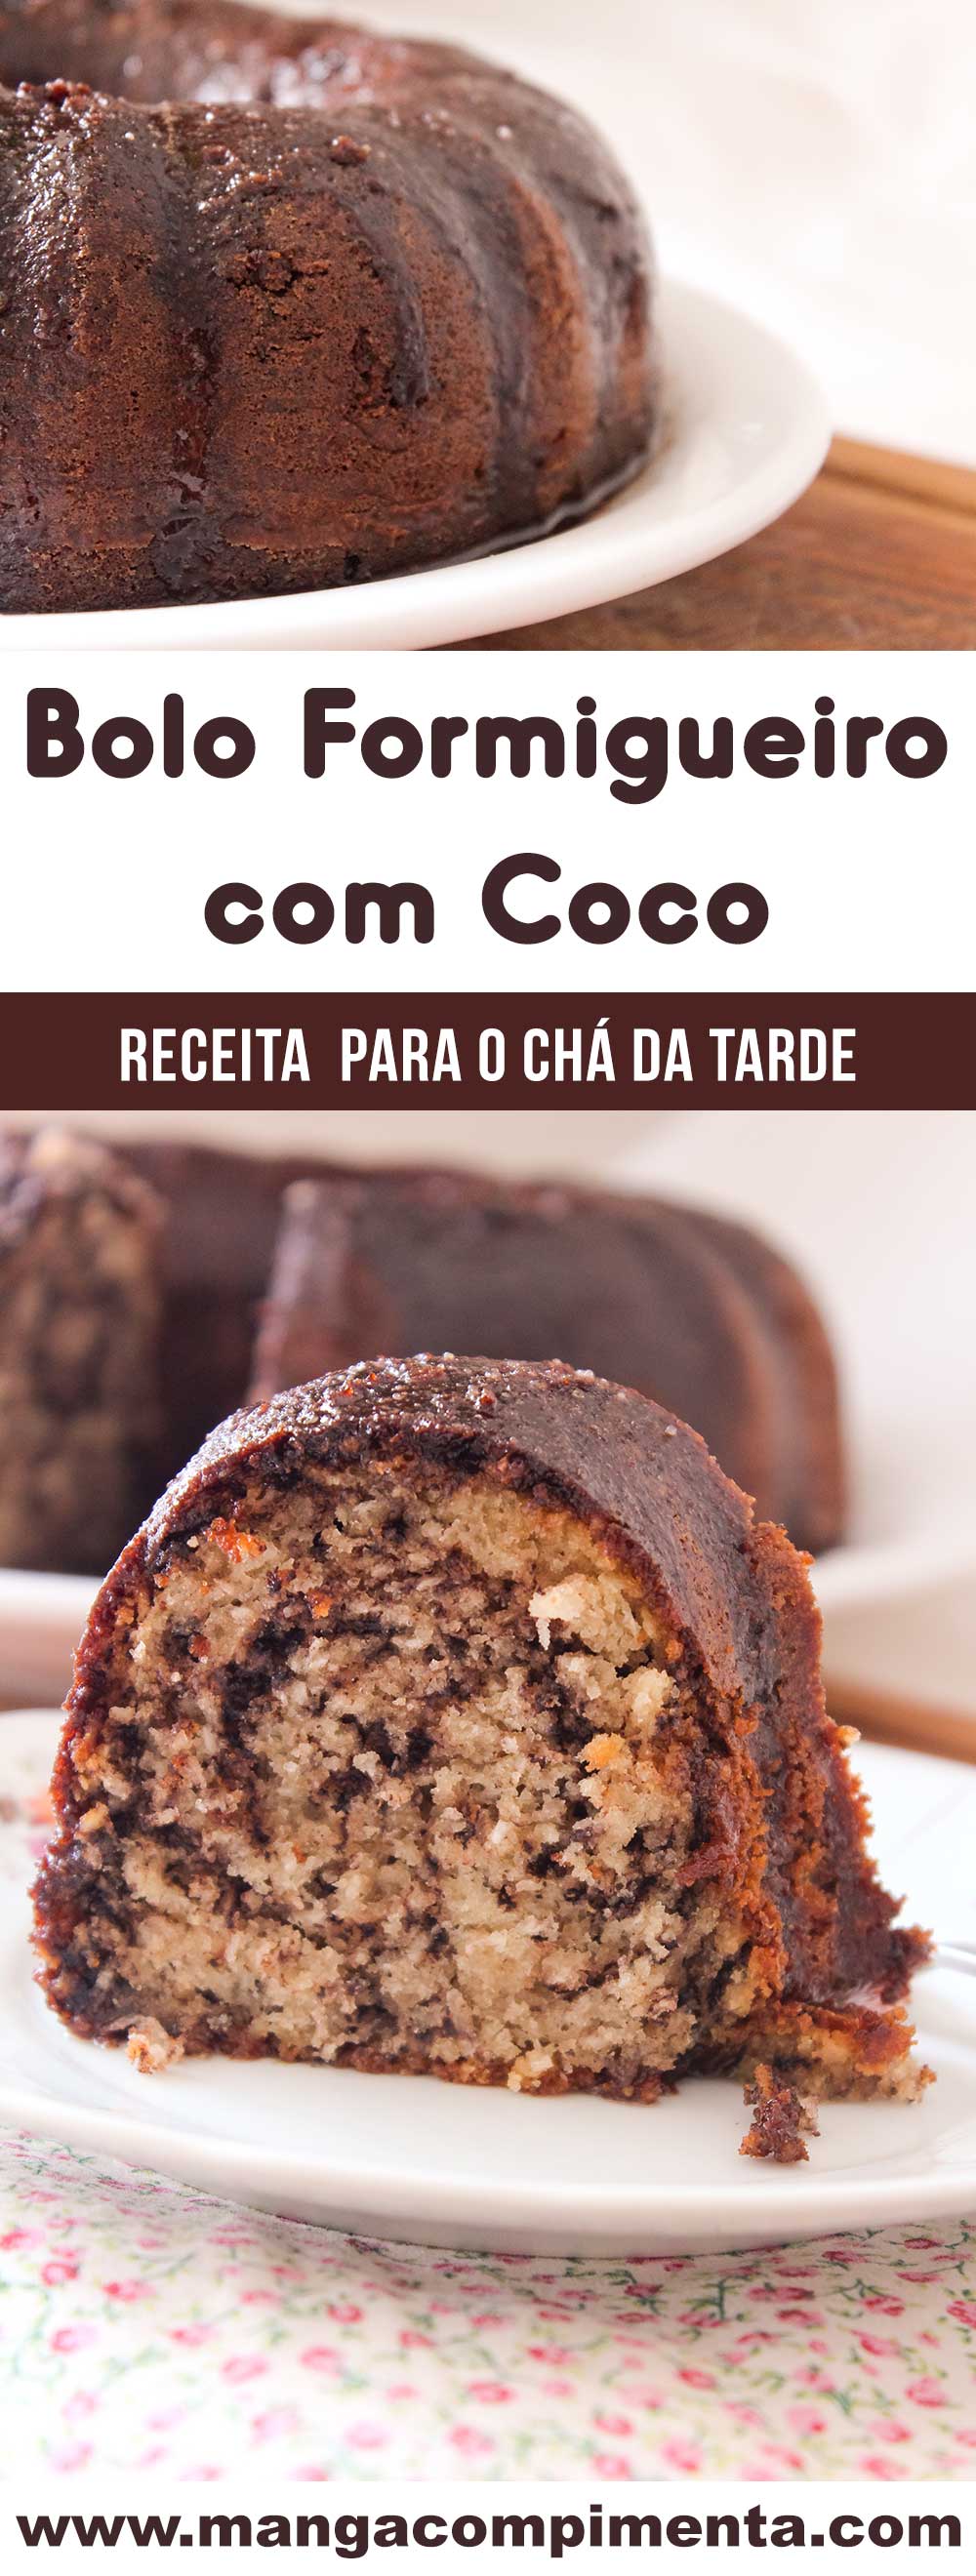 Receita de Bolo Formigueiro com Coco - um doce das antigas para o café da manhã ou lanche da tarde da família!